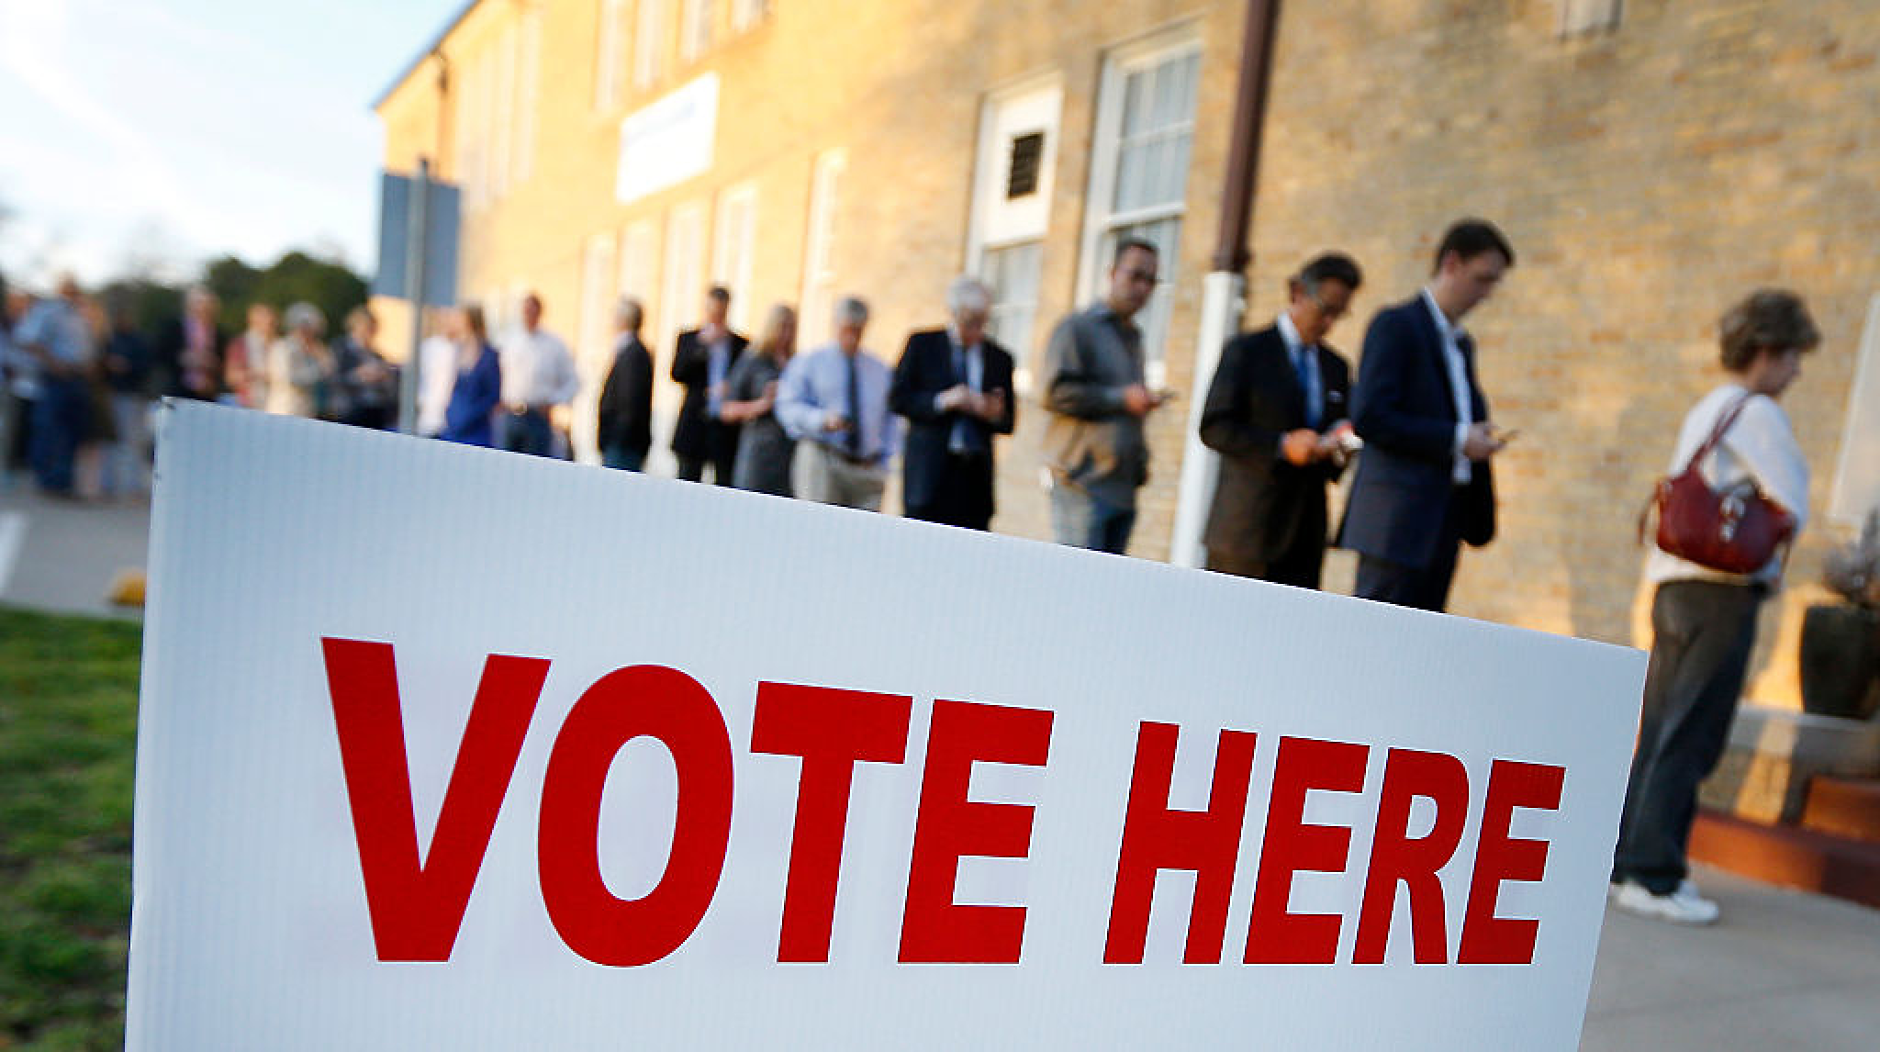 Гласоподавателите в много страни са скептично настроени към демокрацията, показва проучване